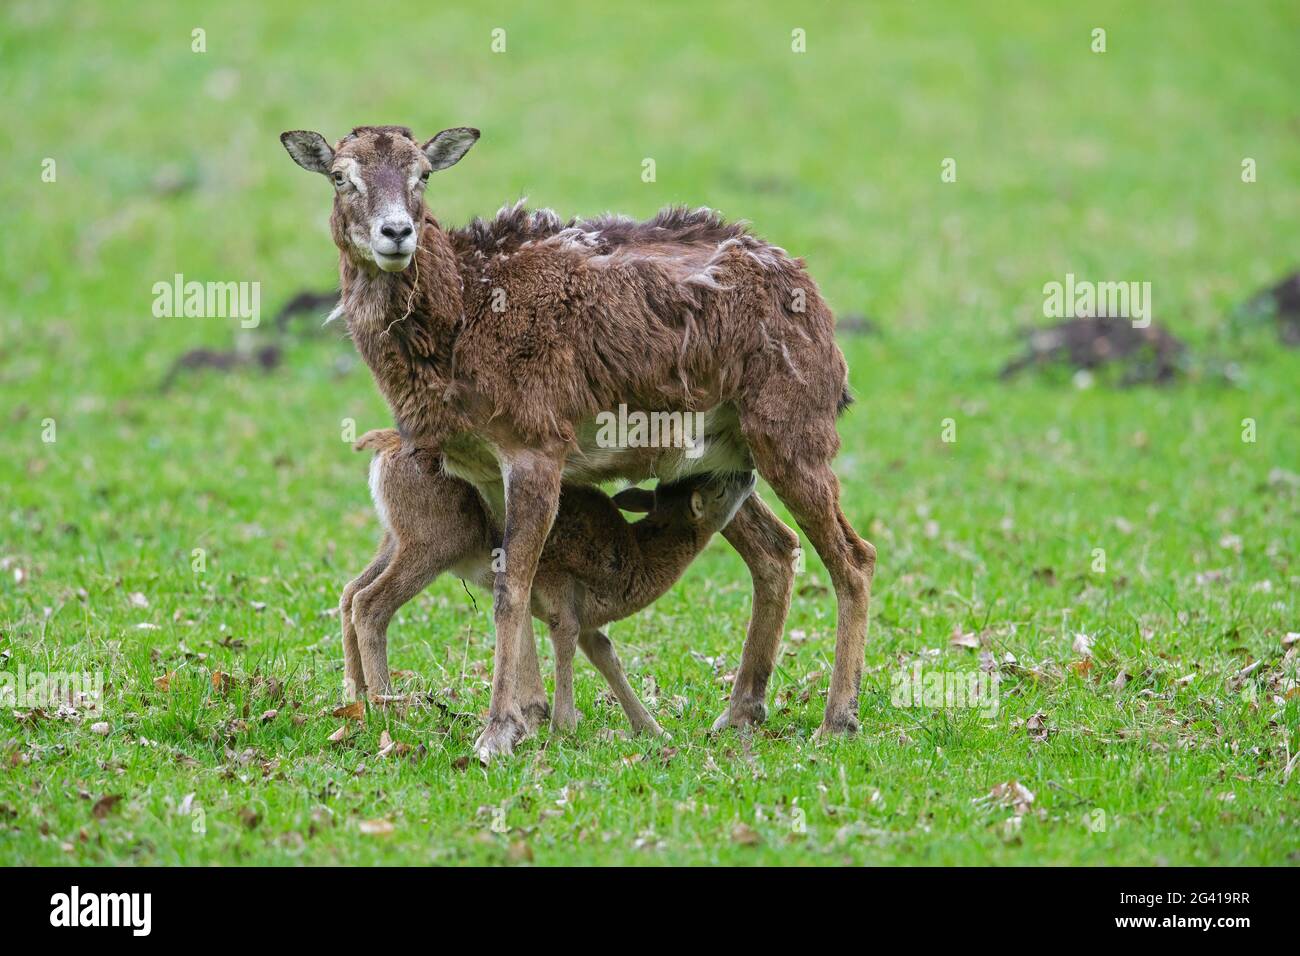 Mouflon européen (Ovis gmelini musimon / Ovis ammon / Ovis orientalis musimon) brebis / femelle avec agneau de lait dans les prairies au printemps Banque D'Images